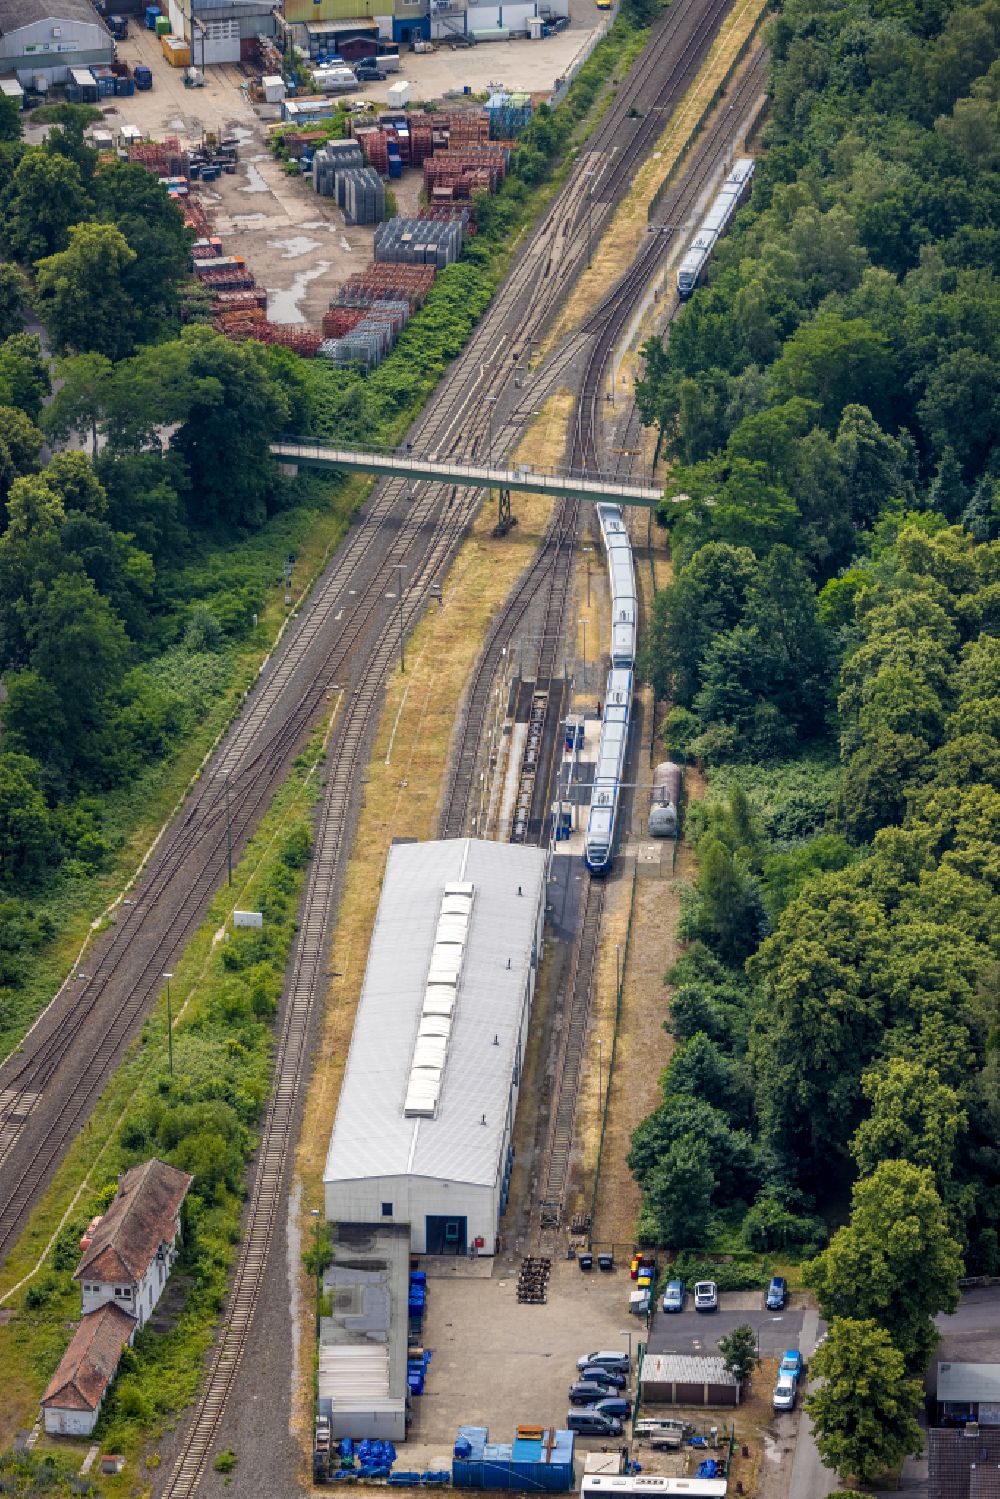 Luftbild Dorsten - Bahnbetriebswerk RheinRuhrbahn Betriebswerk in Dorsten im Bundesland Nordrhein-Westfalen, Deutschland